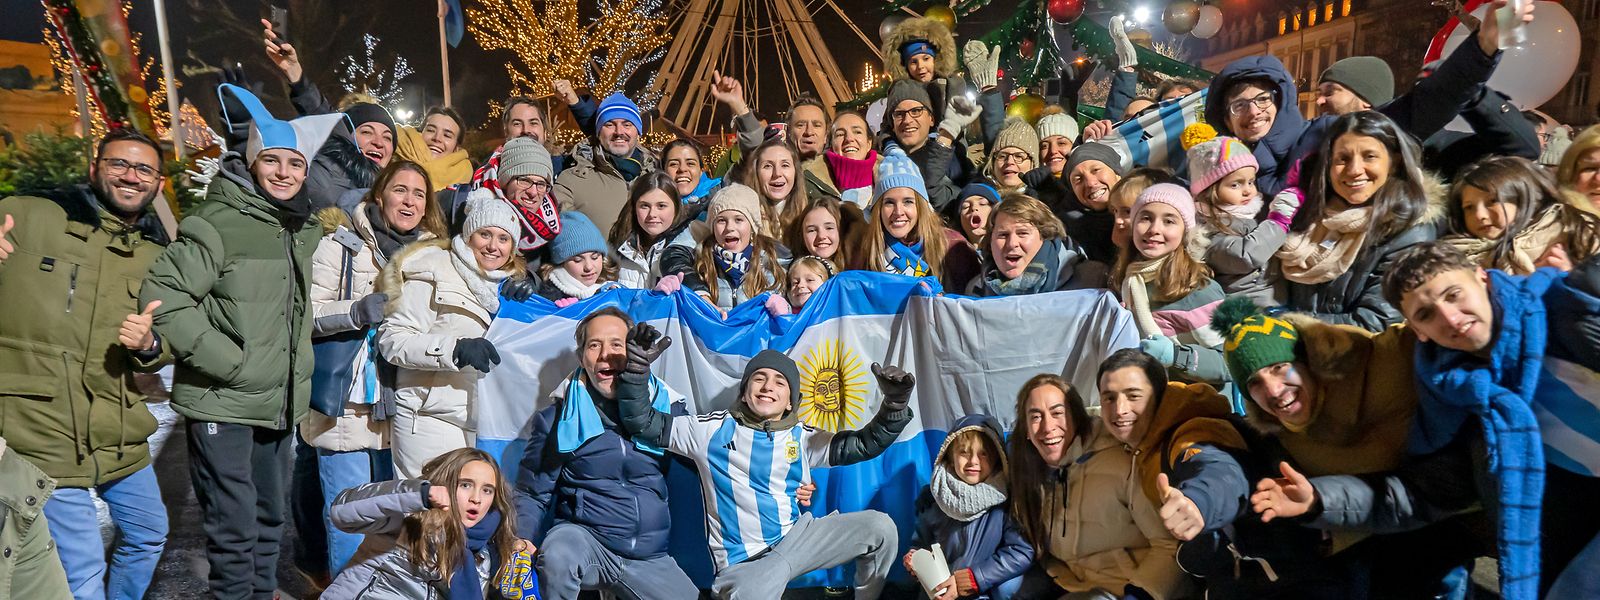 Die Freude der argentinischen Fans kannte nach dem Finalsieg gegen Frankreich keine Grenzen.